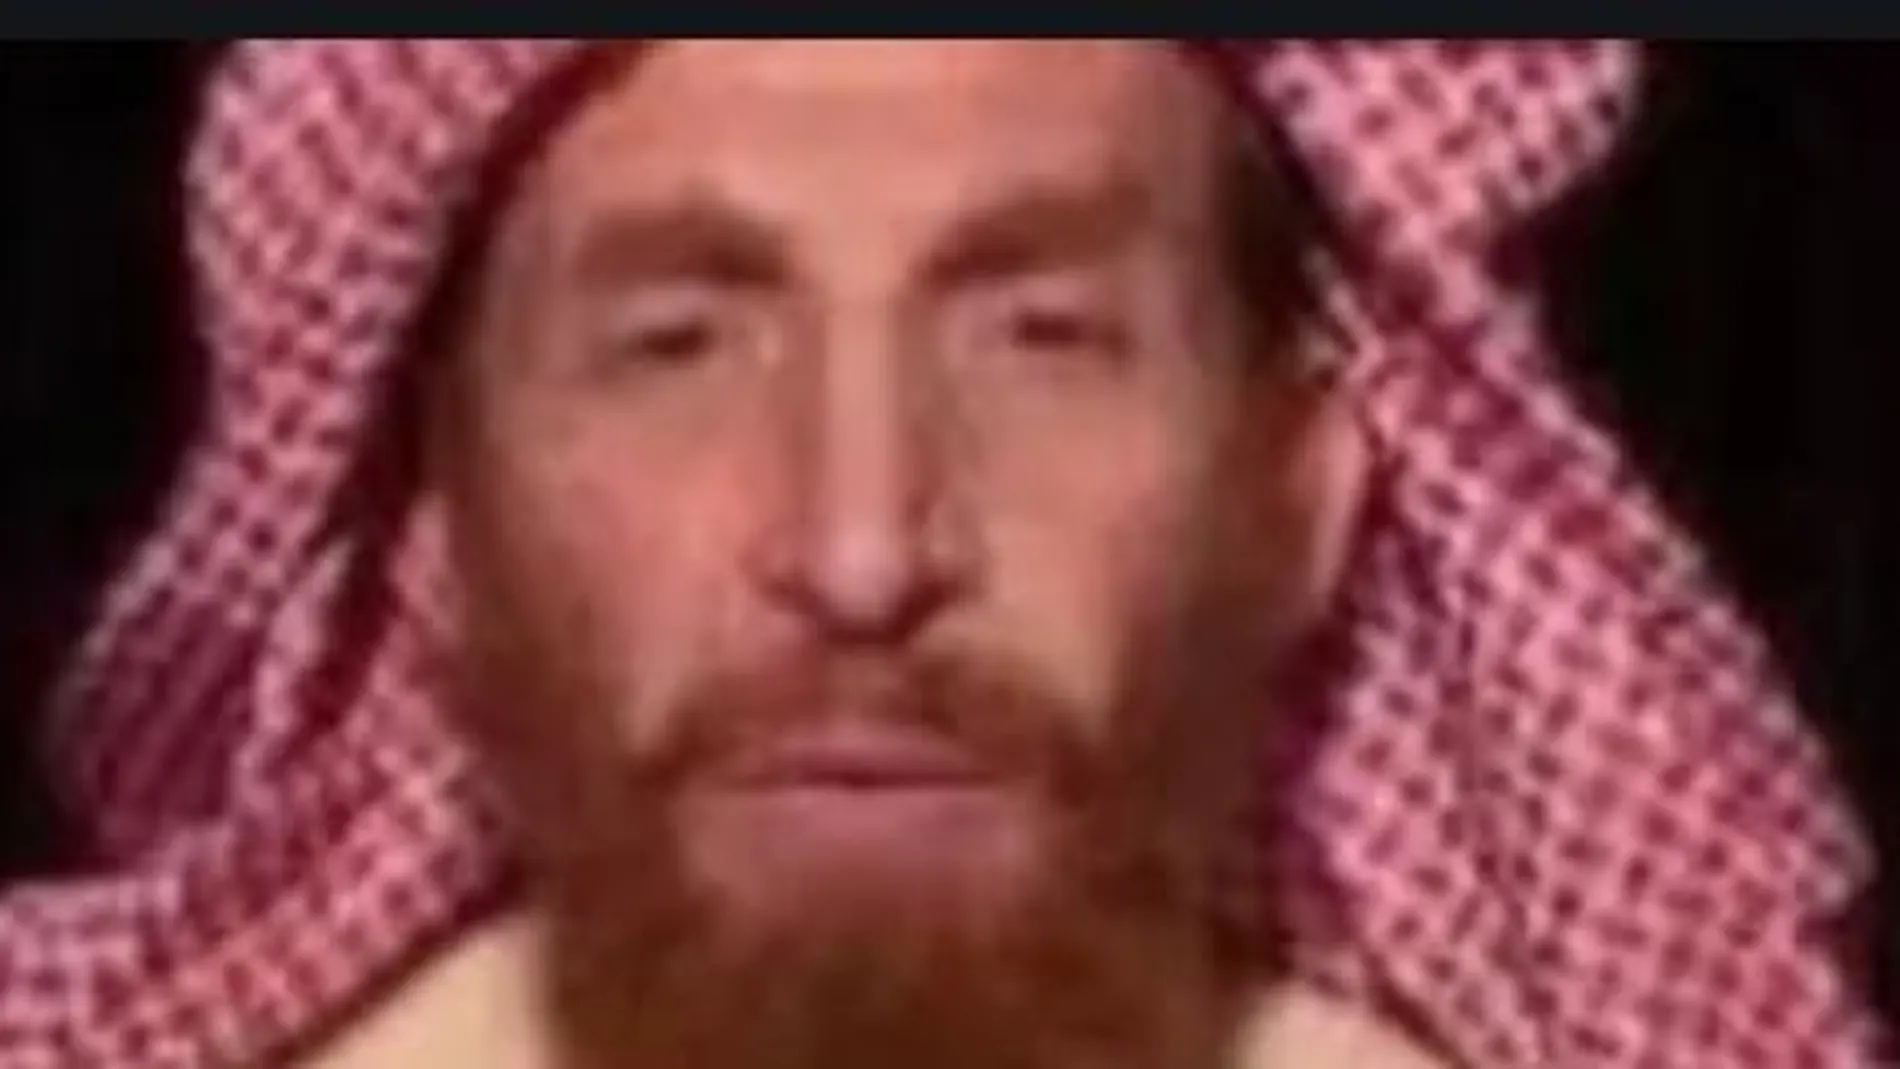 Abu Mushim al Masri